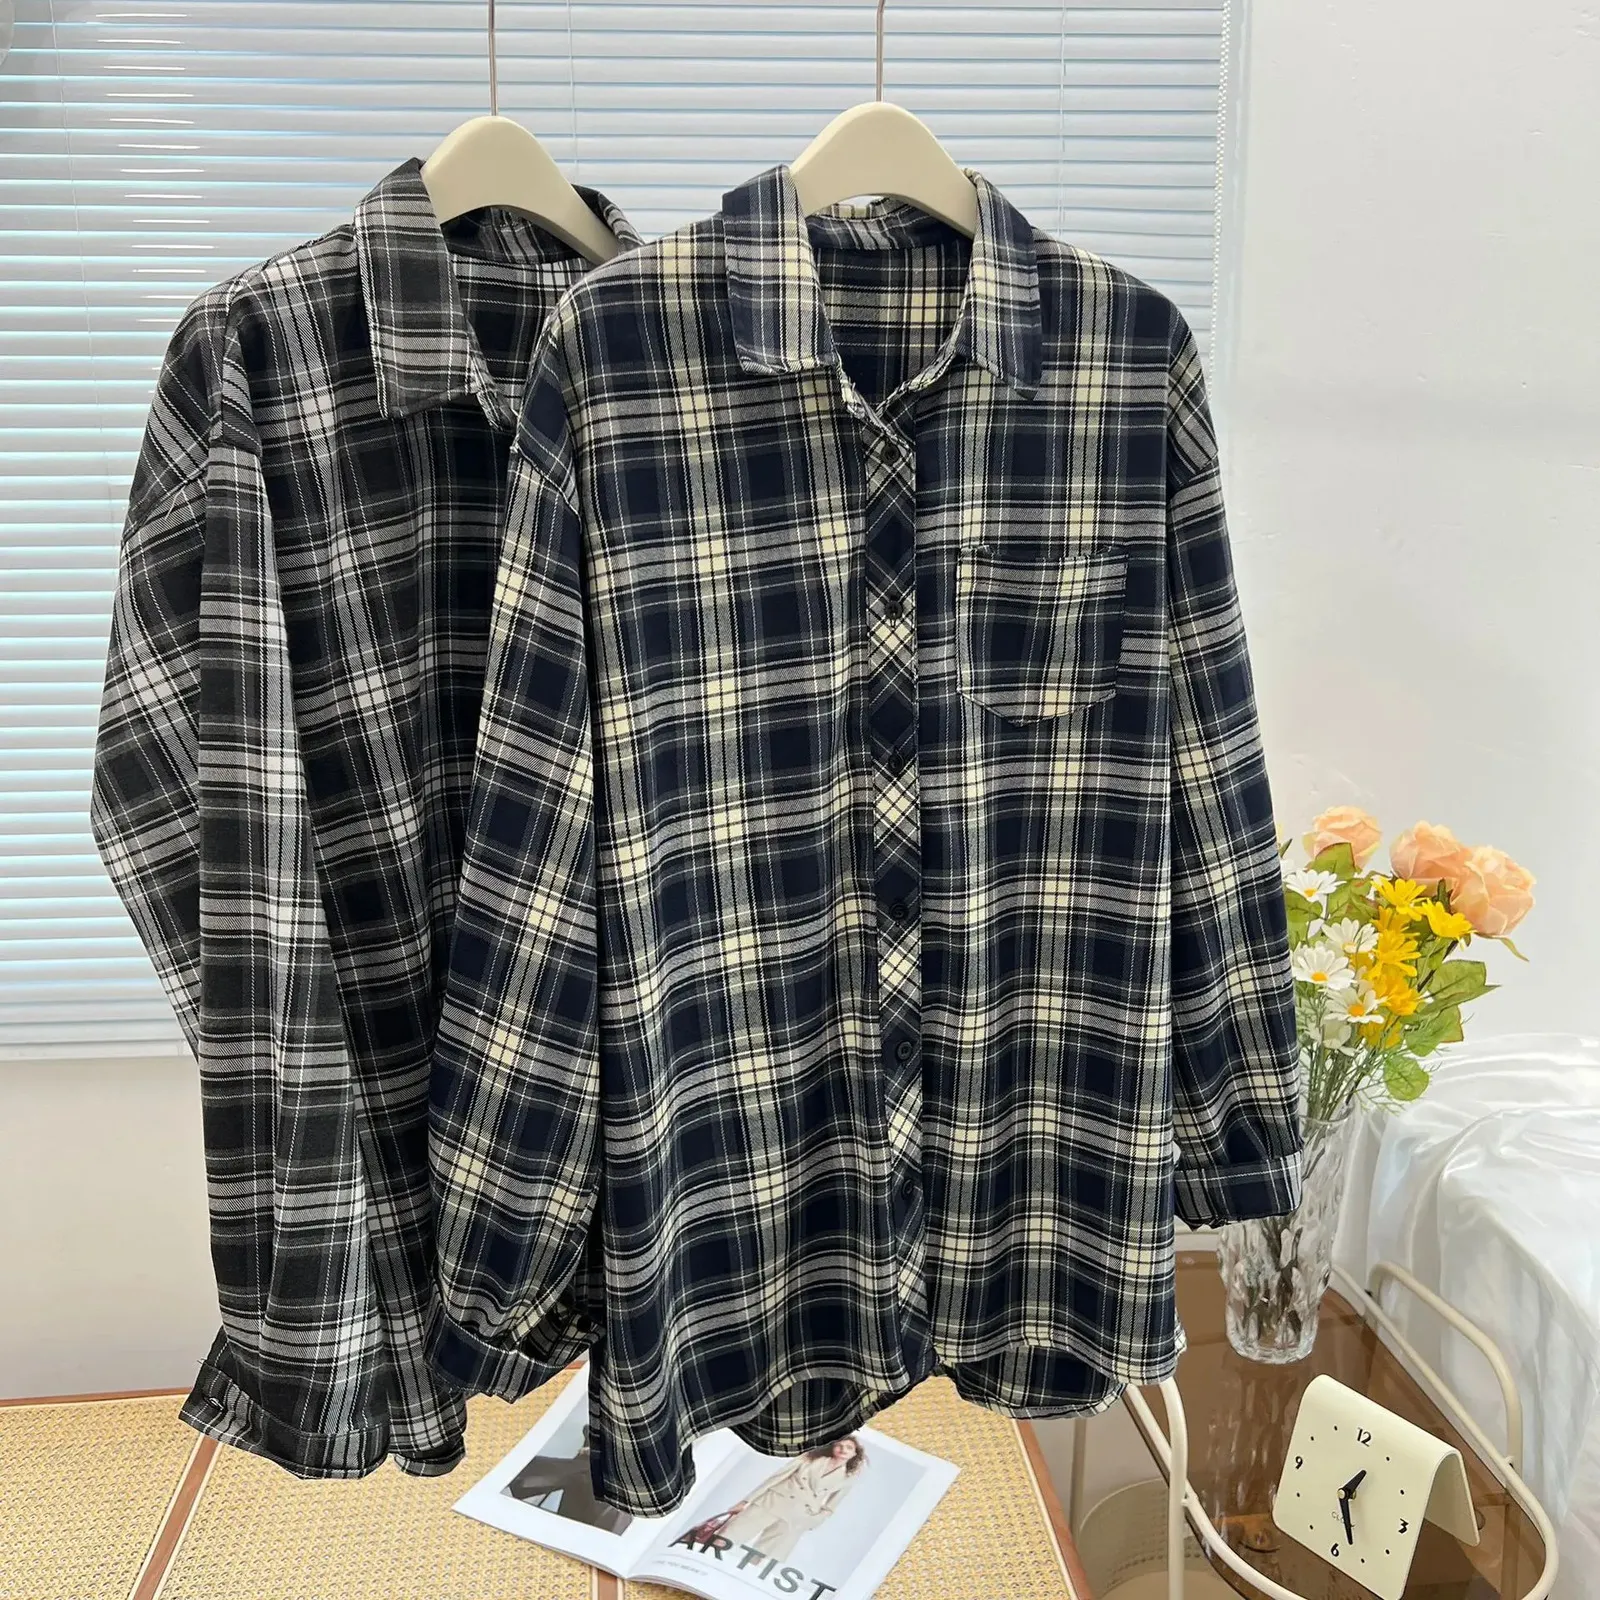 Американская винтажная клетчатая рубашка для женщин больших размеров, осенне-зимняя повседневная одежда, блузки с заниженными рукавами, модные свободные топы B2 3100 240202